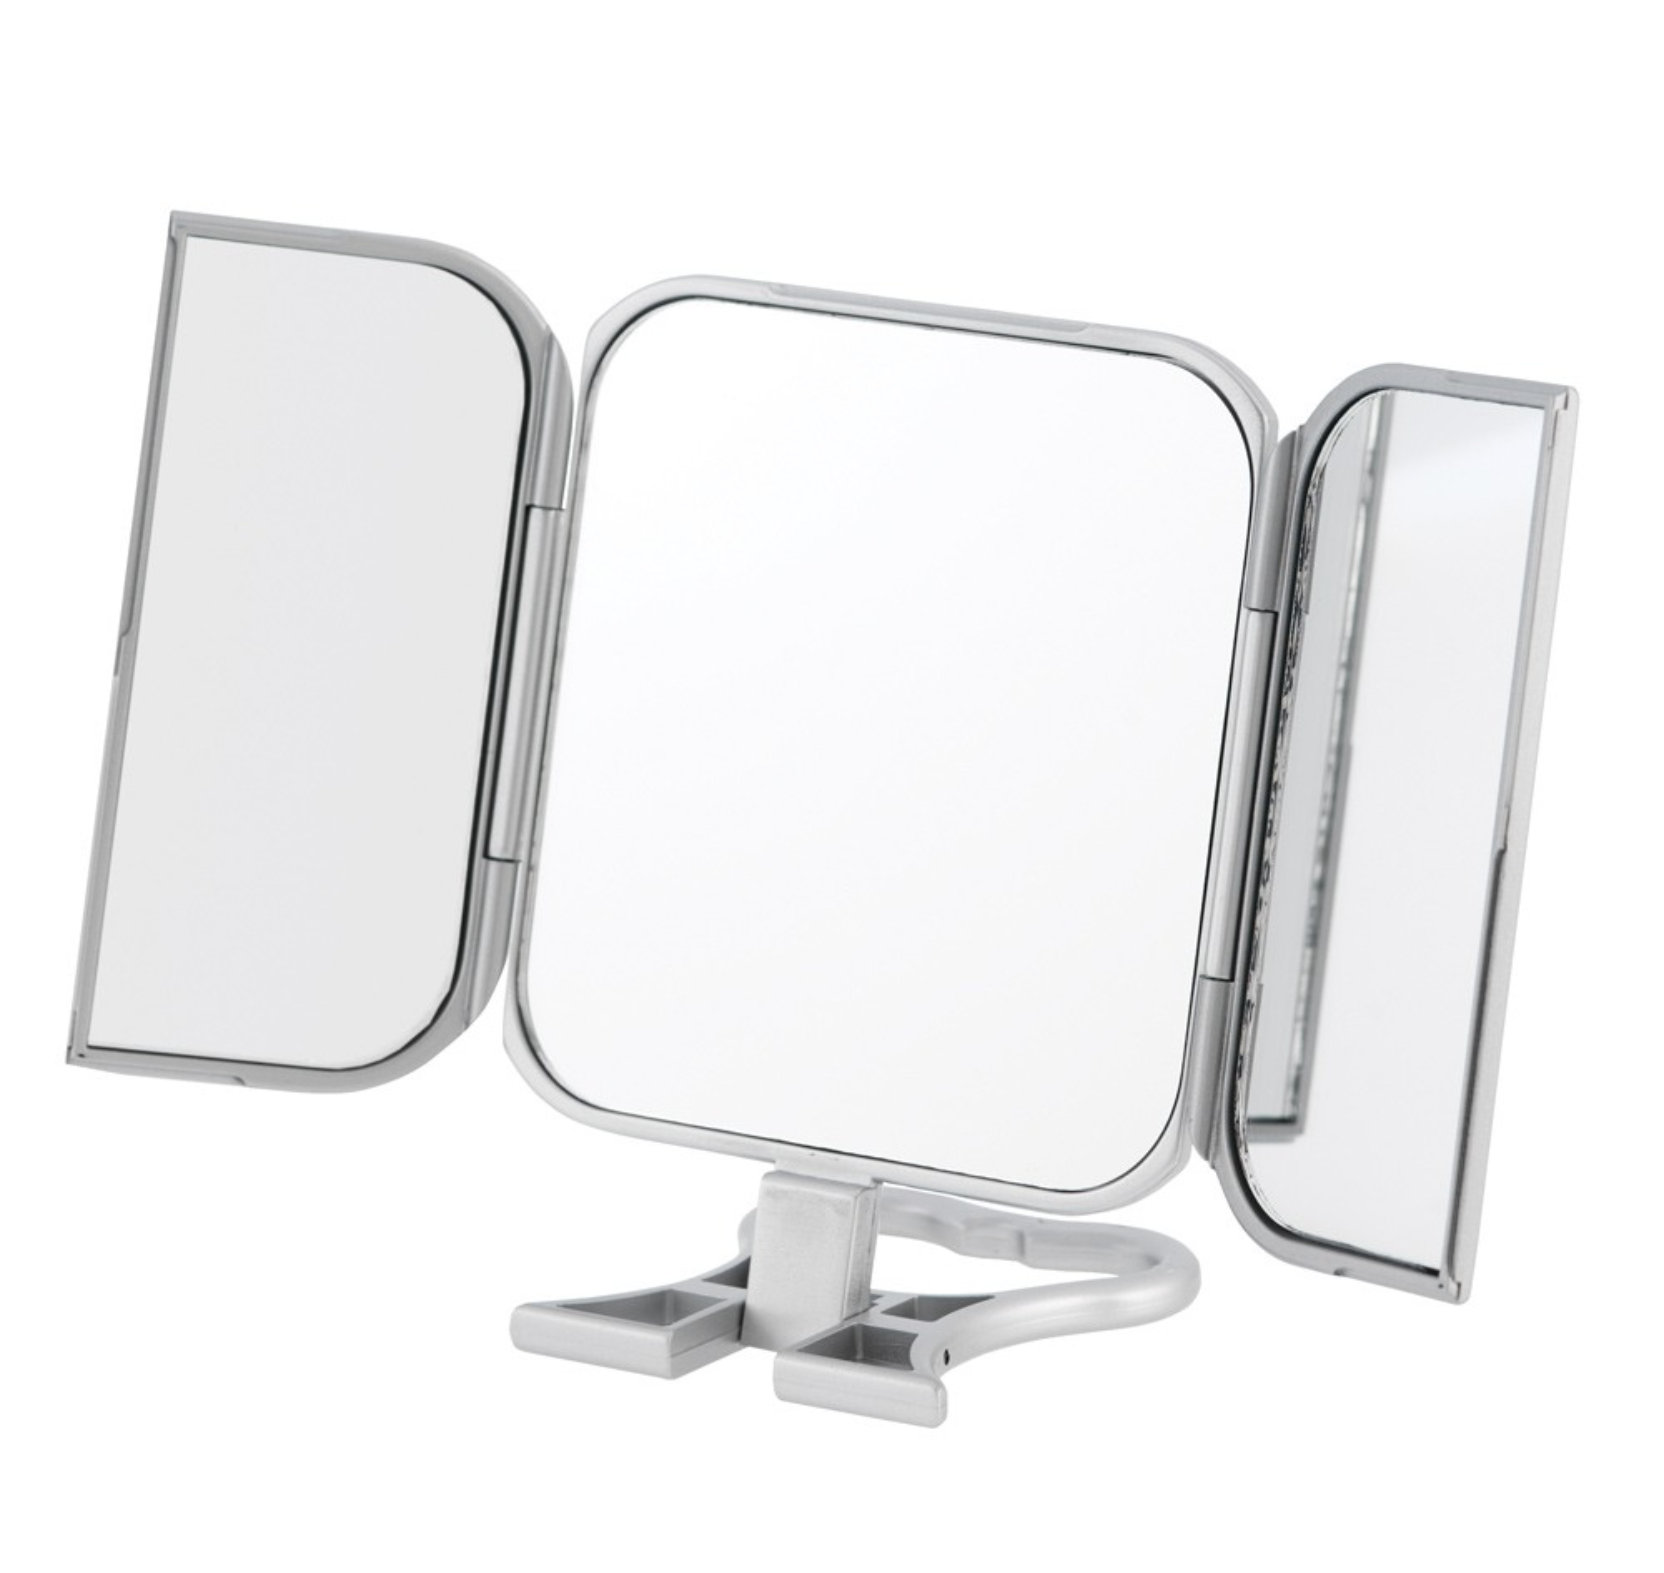 3-Way Portable Vanity Mirror